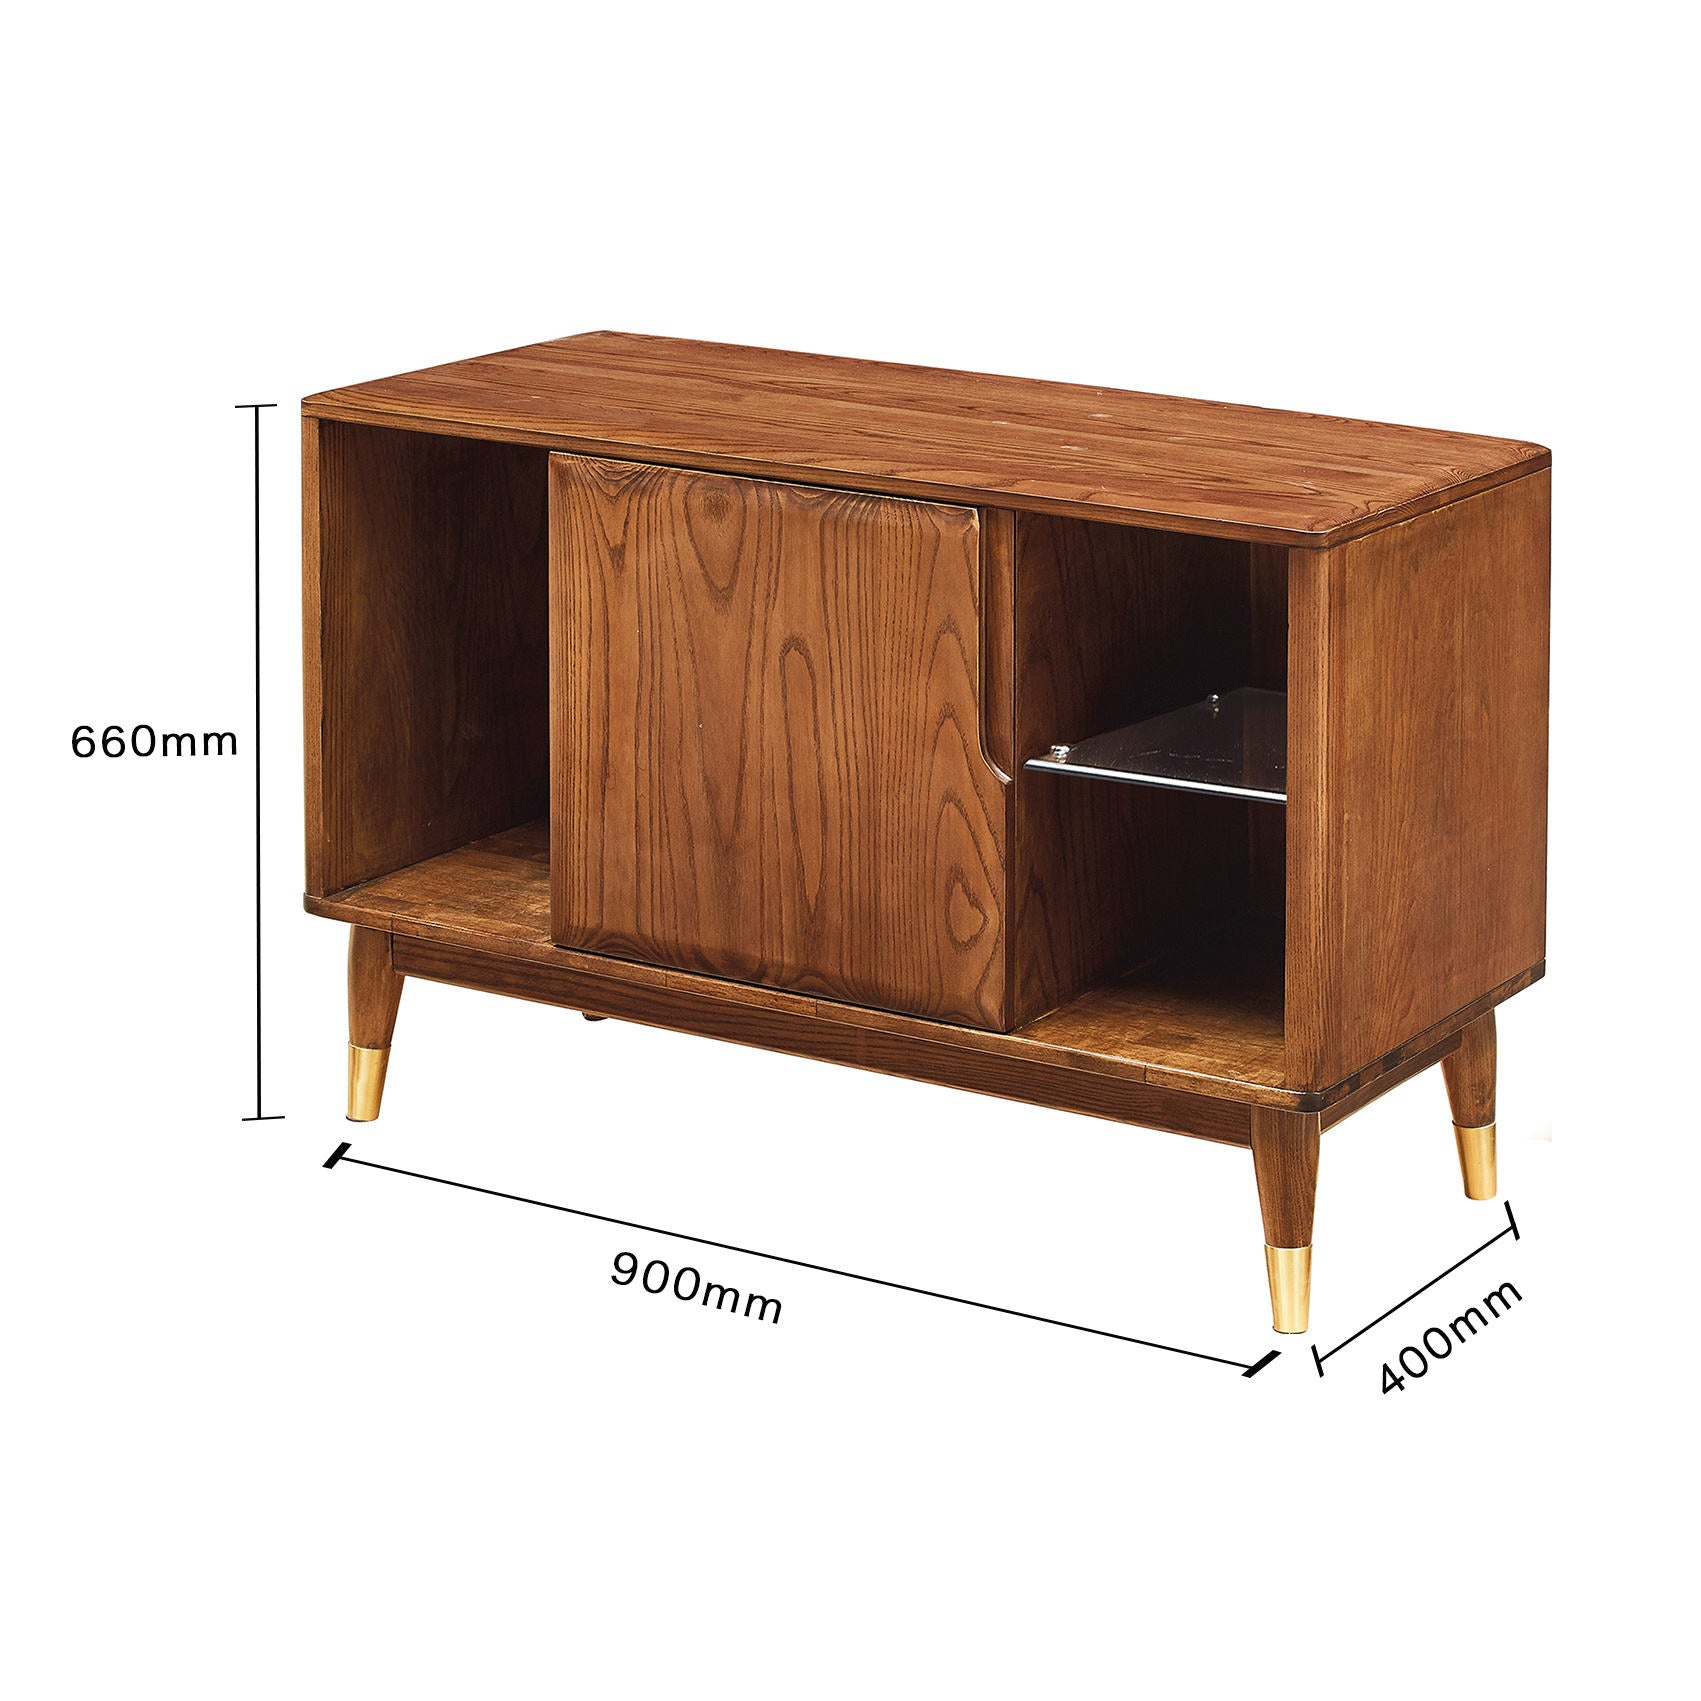 تصفح الان خزانة جانبية تصميم خشبي عصري اونلاين | بيوت